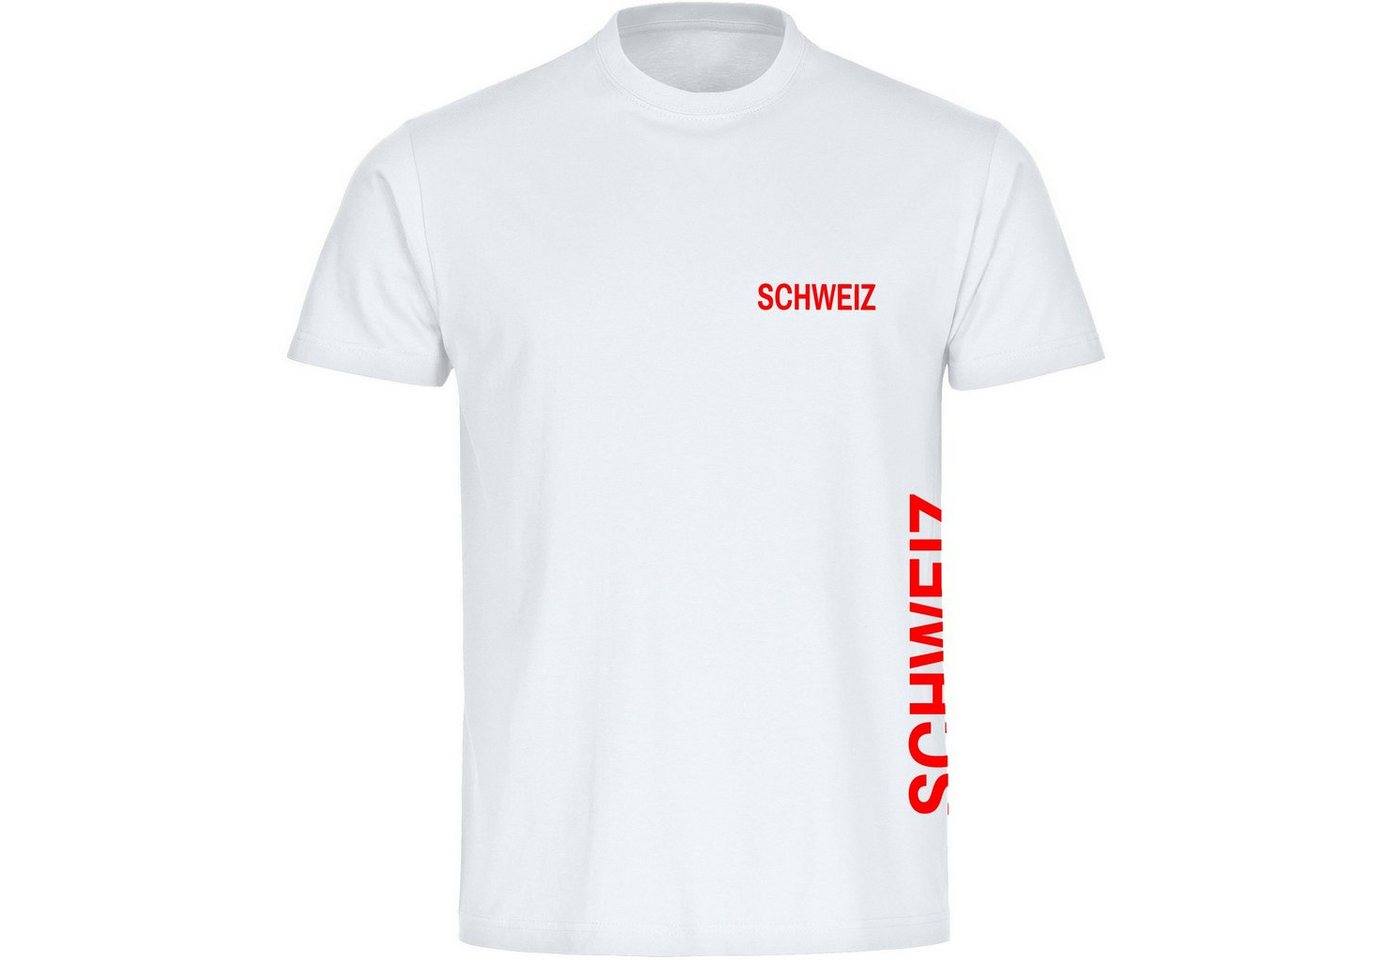 multifanshop T-Shirt Herren Schweiz - Brust & Seite - Männer von multifanshop